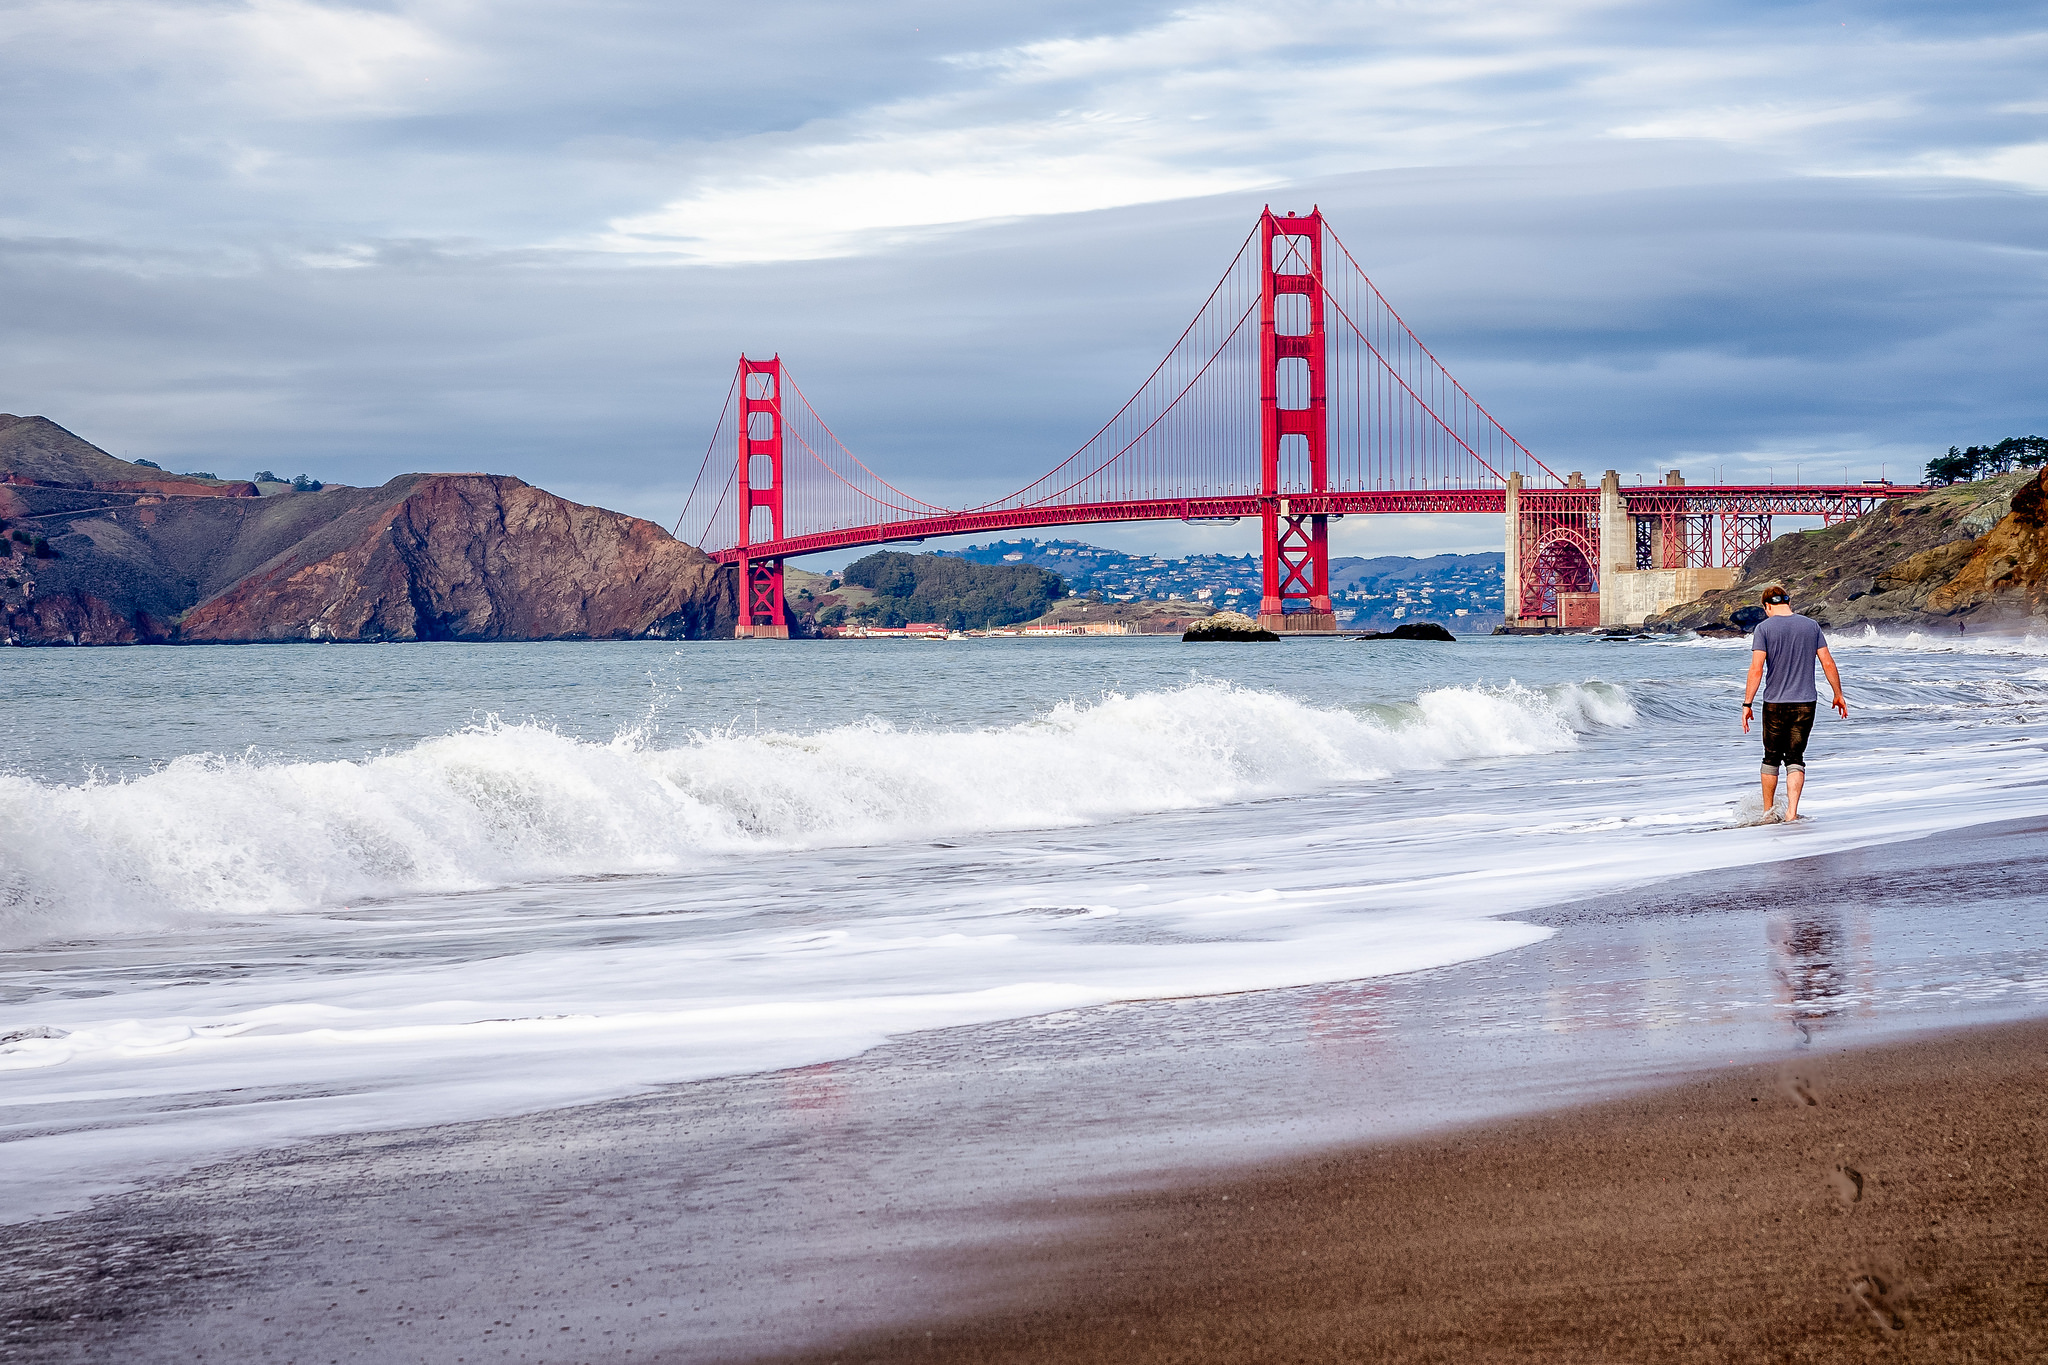 Le Golden Gate Bridge, pont rouge emblématique de San Francisco. Crédit photo @gags9999 - Flickr